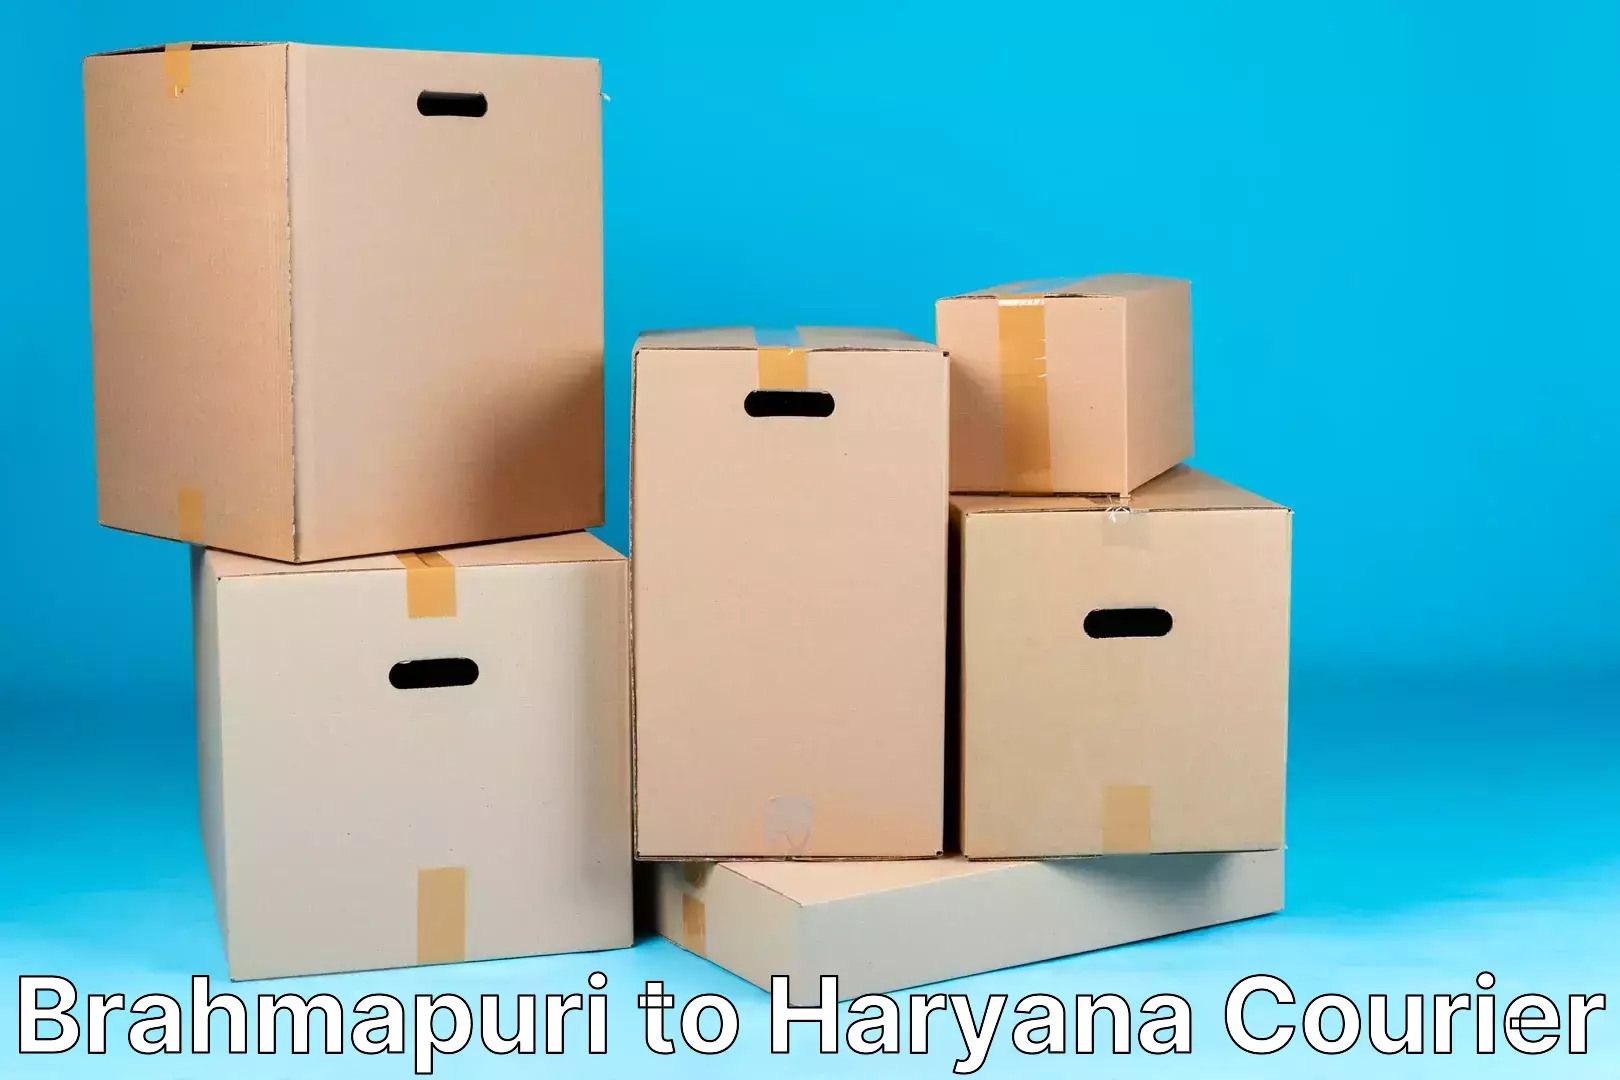 Baggage transport innovation Brahmapuri to Haryana